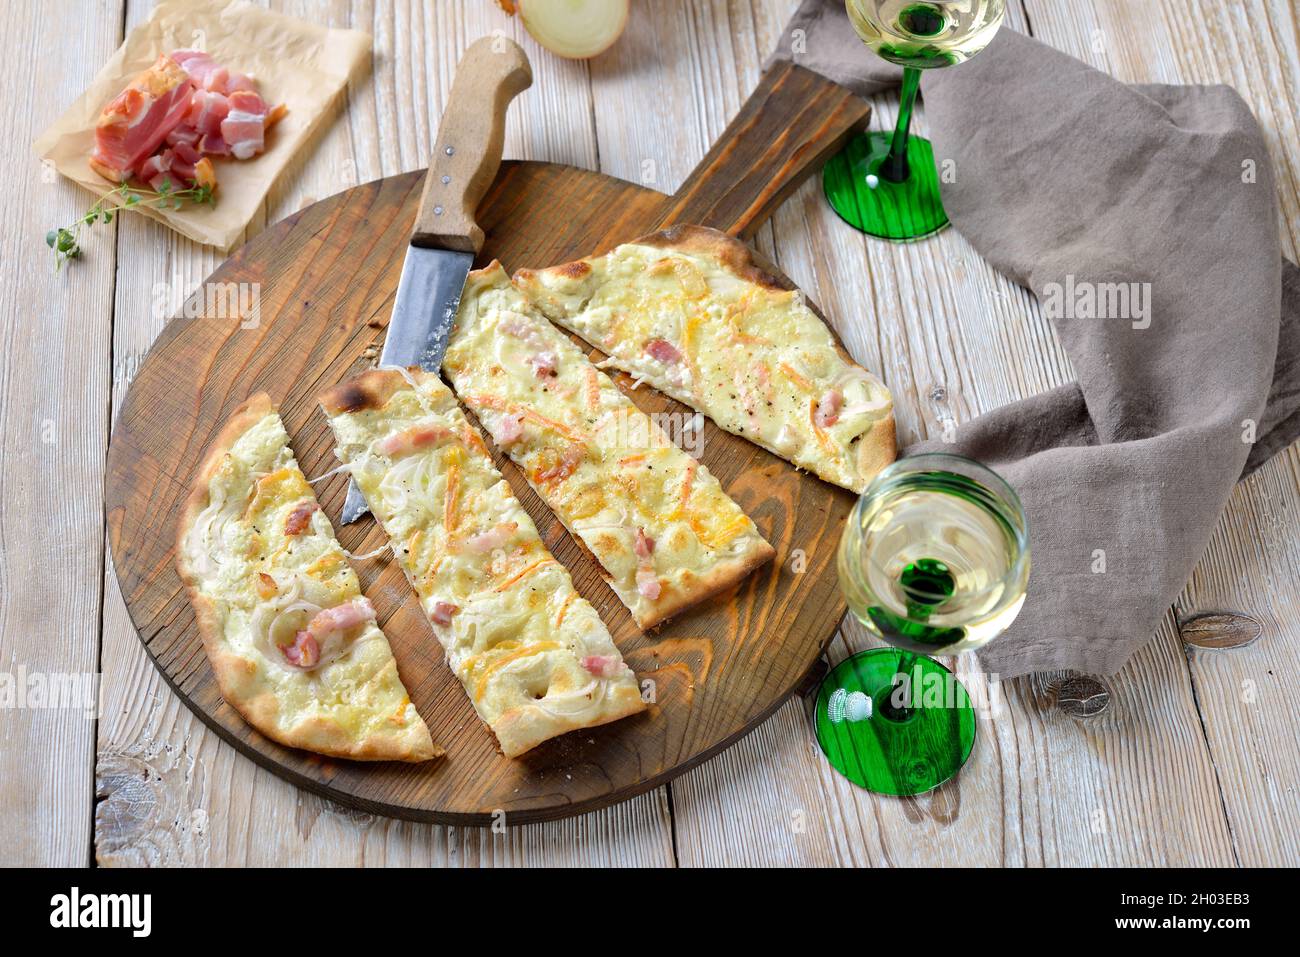 Herzhafte Flammkuchen aus dem Elsass mit Zwiebeln, geräuchertem Speck und  aus dem Ofen heißer münsterkäse, serviert mit elsässischen Weißwein  Stockfotografie - Alamy